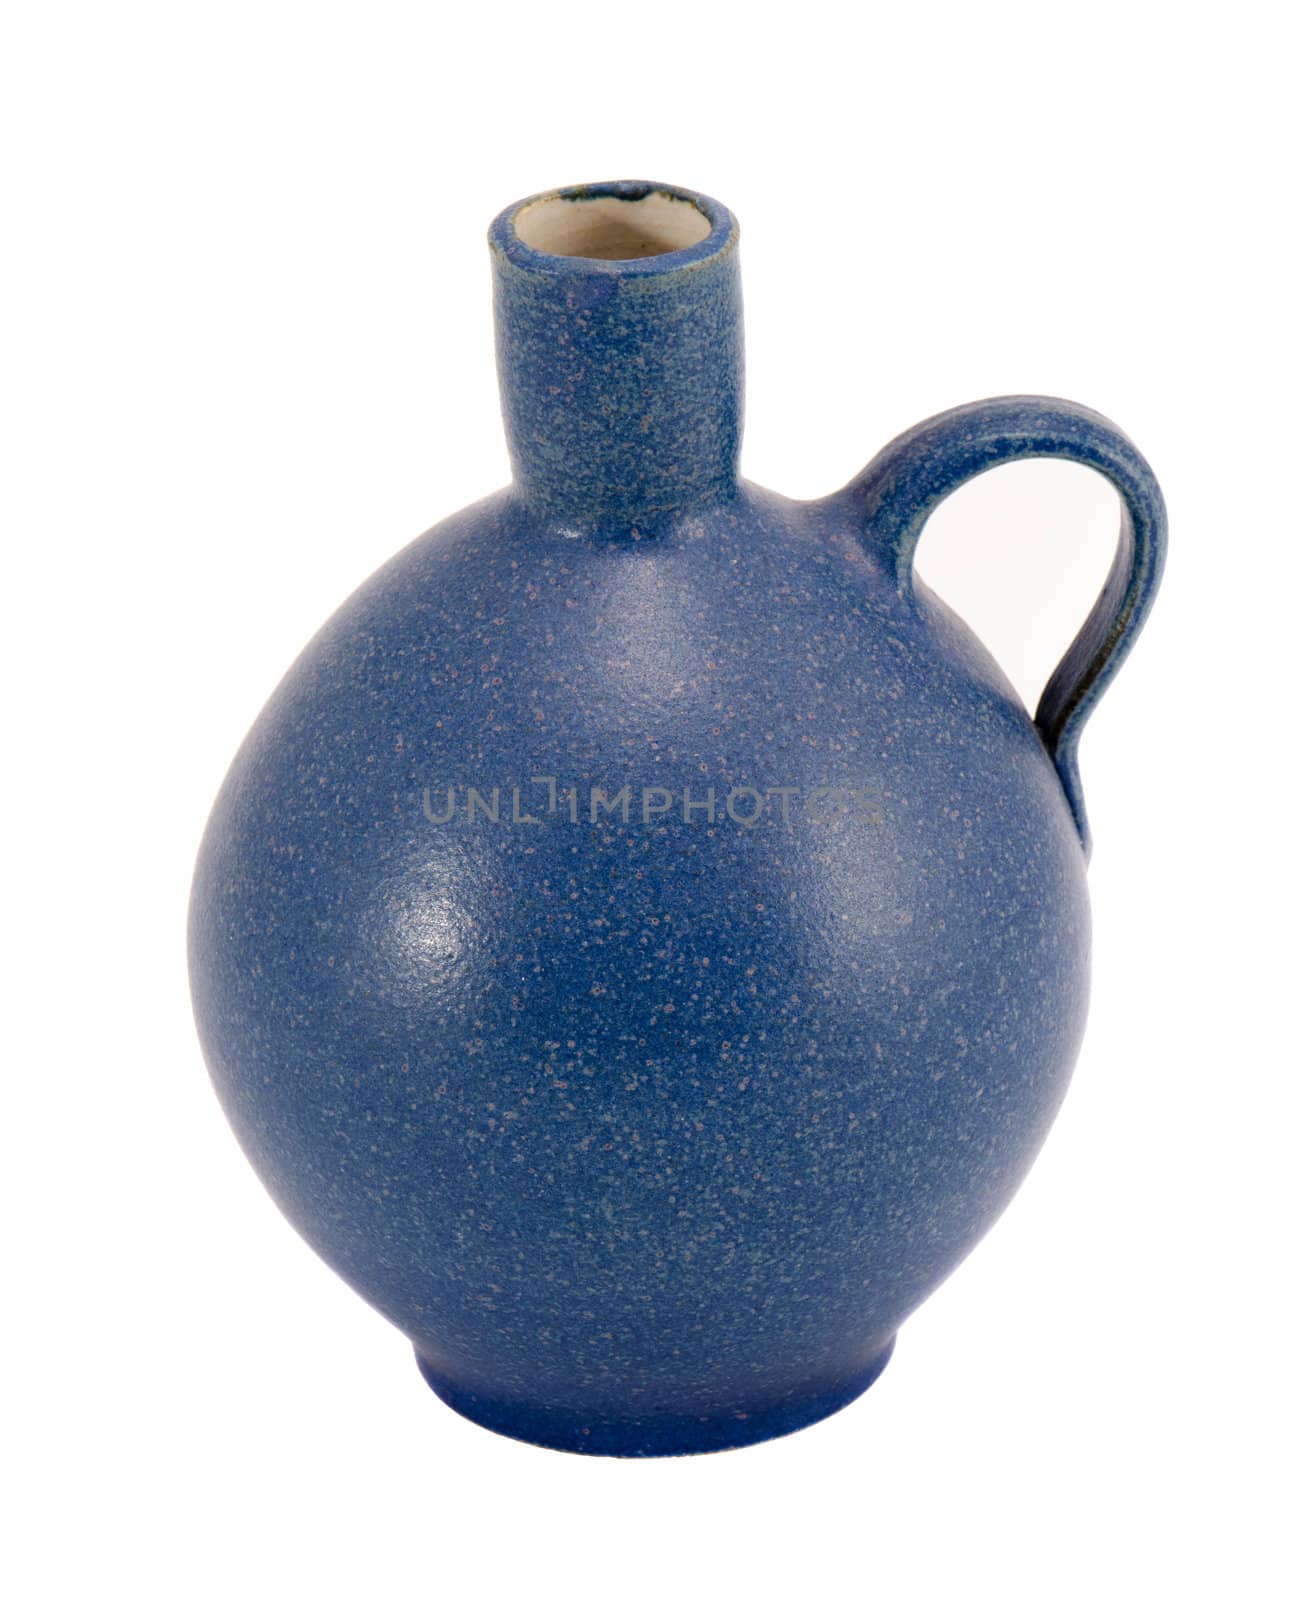 Blue ceramic jug vase with handle isolated on white background.